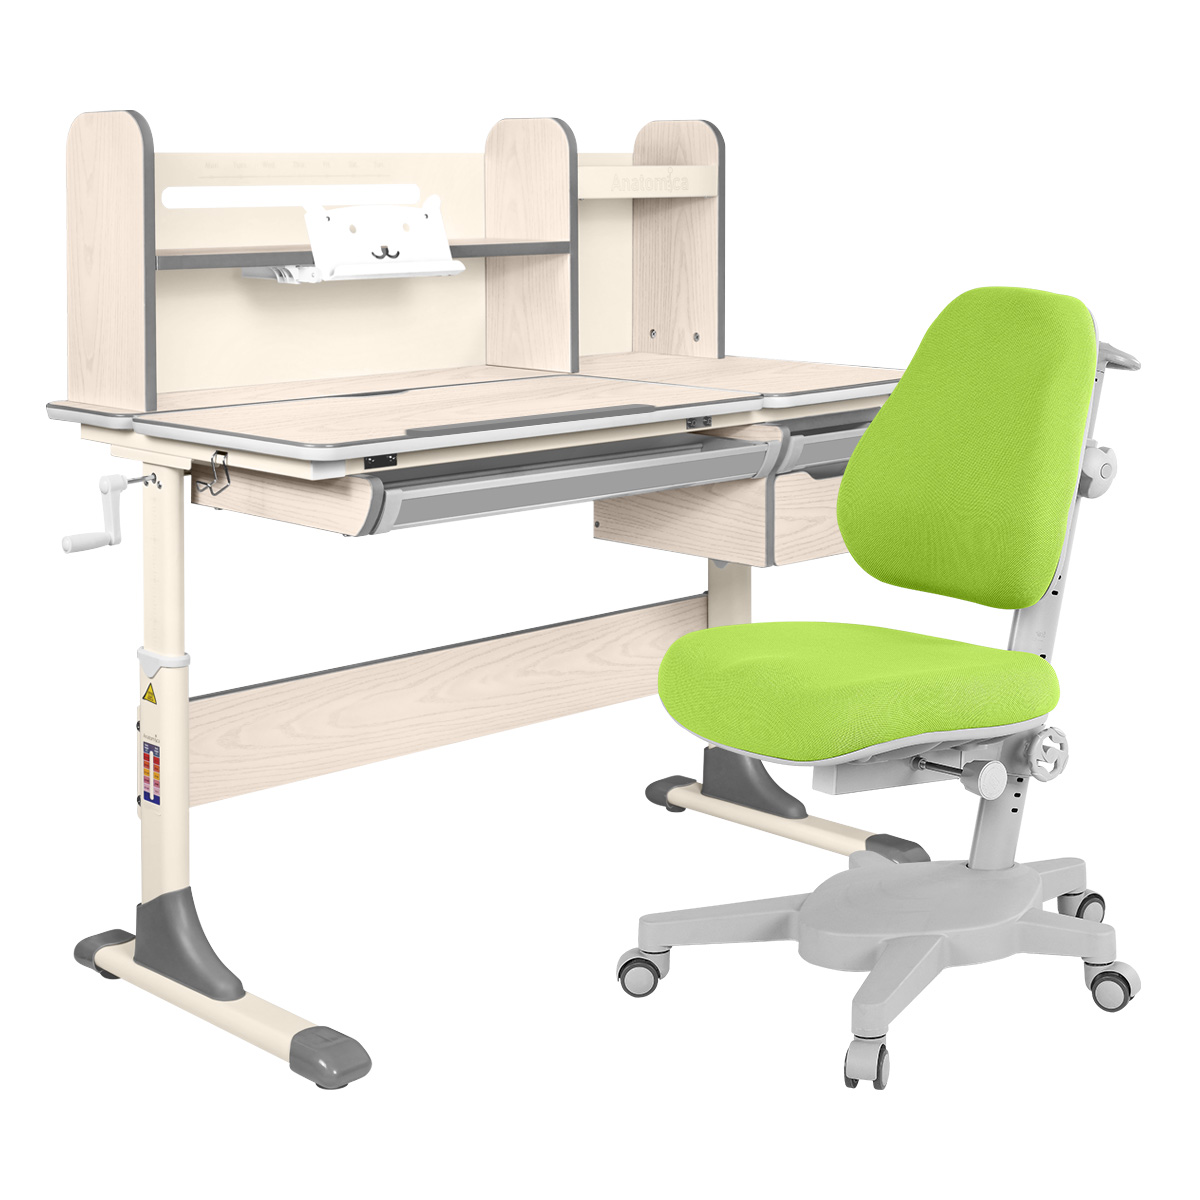 Комплект Anatomica парта Genius клен/серый с зеленым креслом Armata комплект anatomica парта genius белый серый с мятным креслом armata